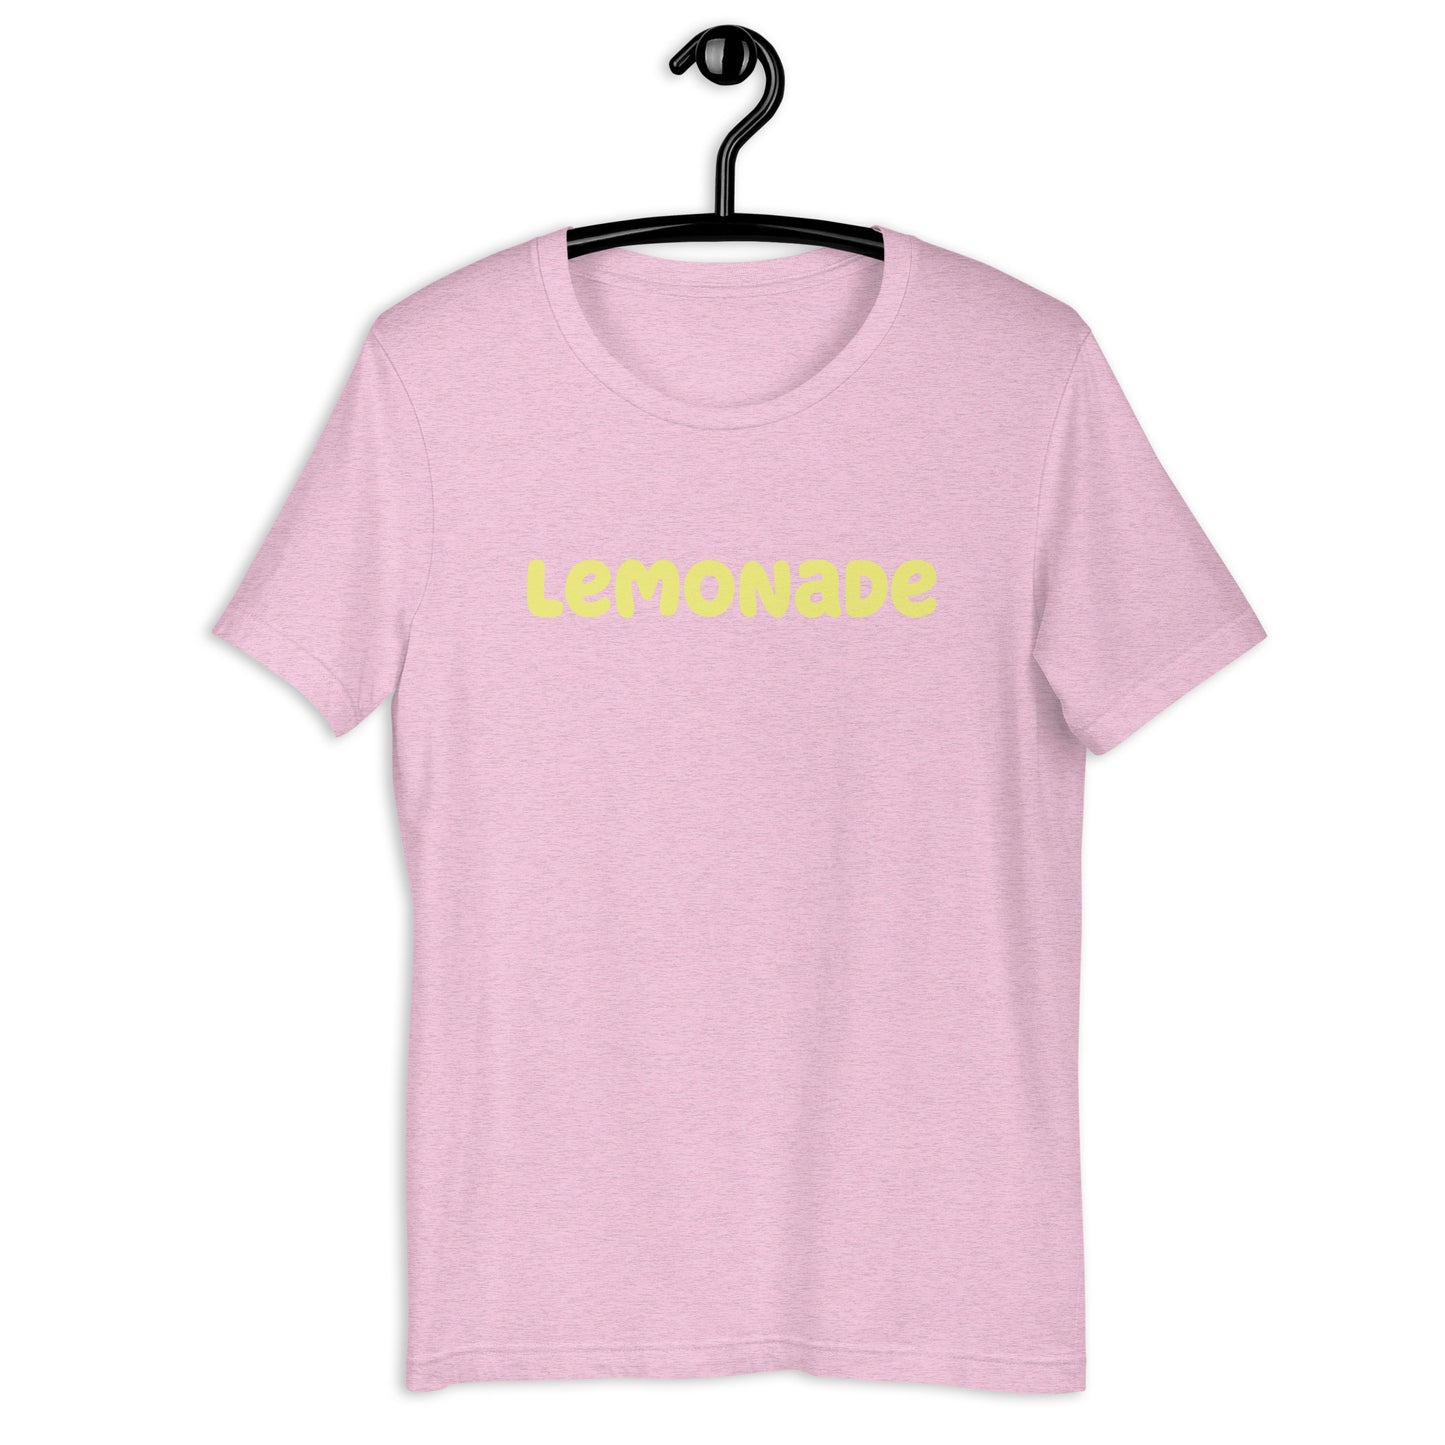 Lemonade (when life gives you lemons) Unisex t-shirt